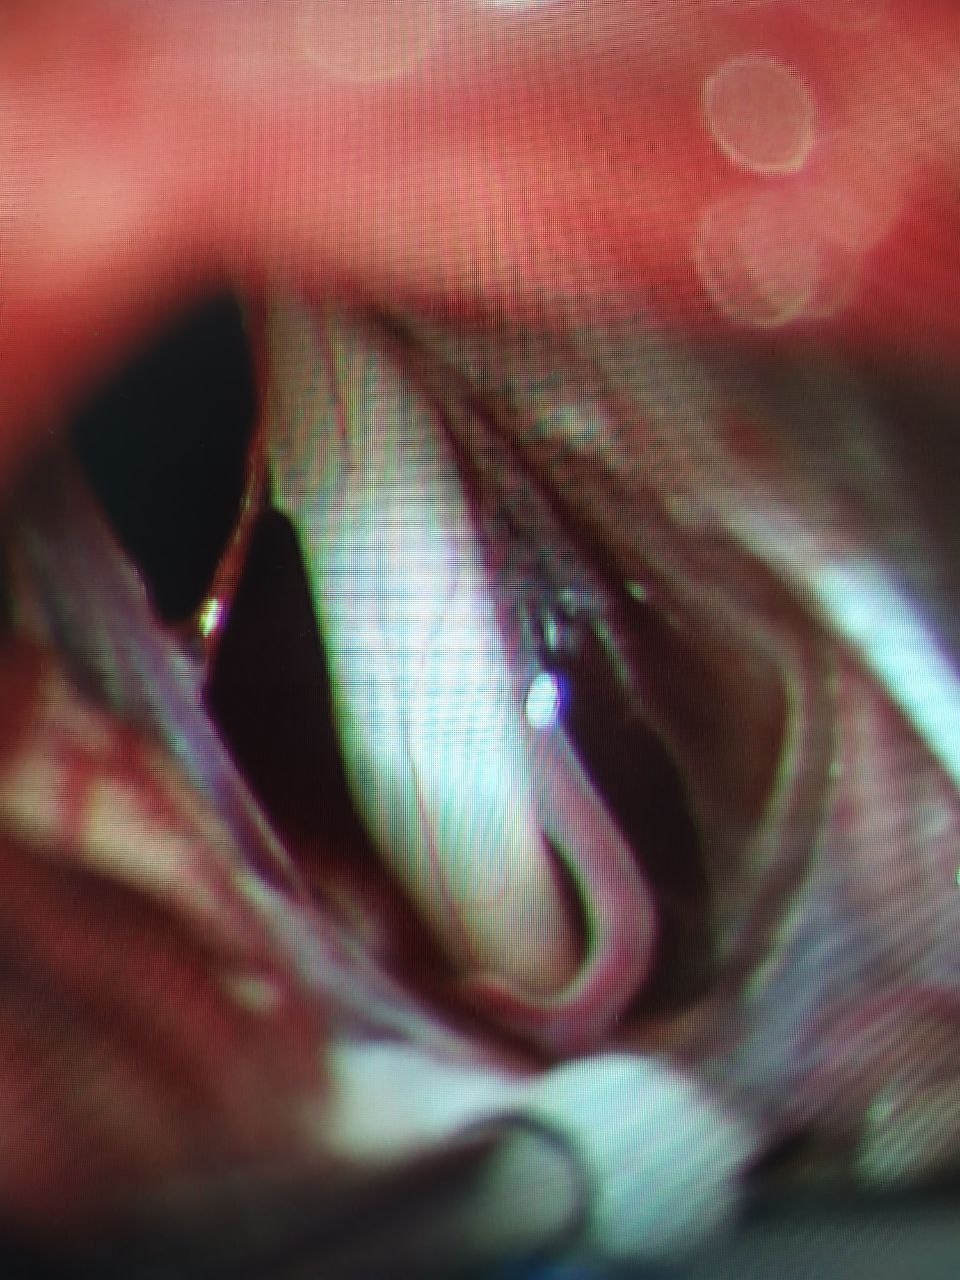 Белое - нерв, красное - артерия. Снимок сделан во время операции через микроскоп с 25-кратным (!) увеличением.